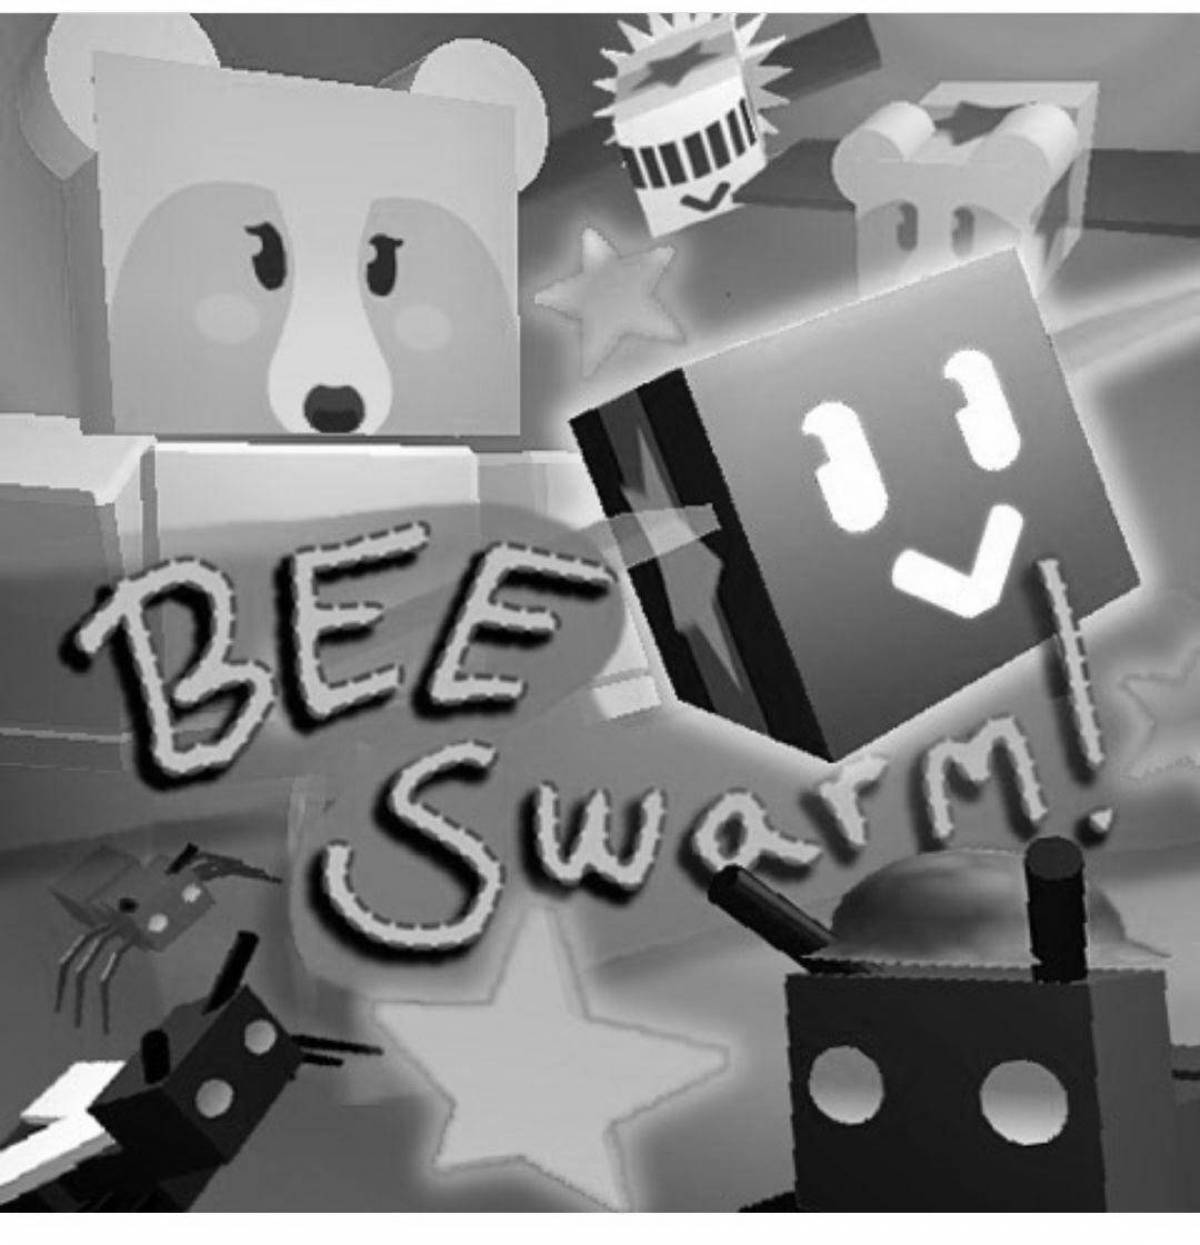 Adorable bee swarm simulator coloring page